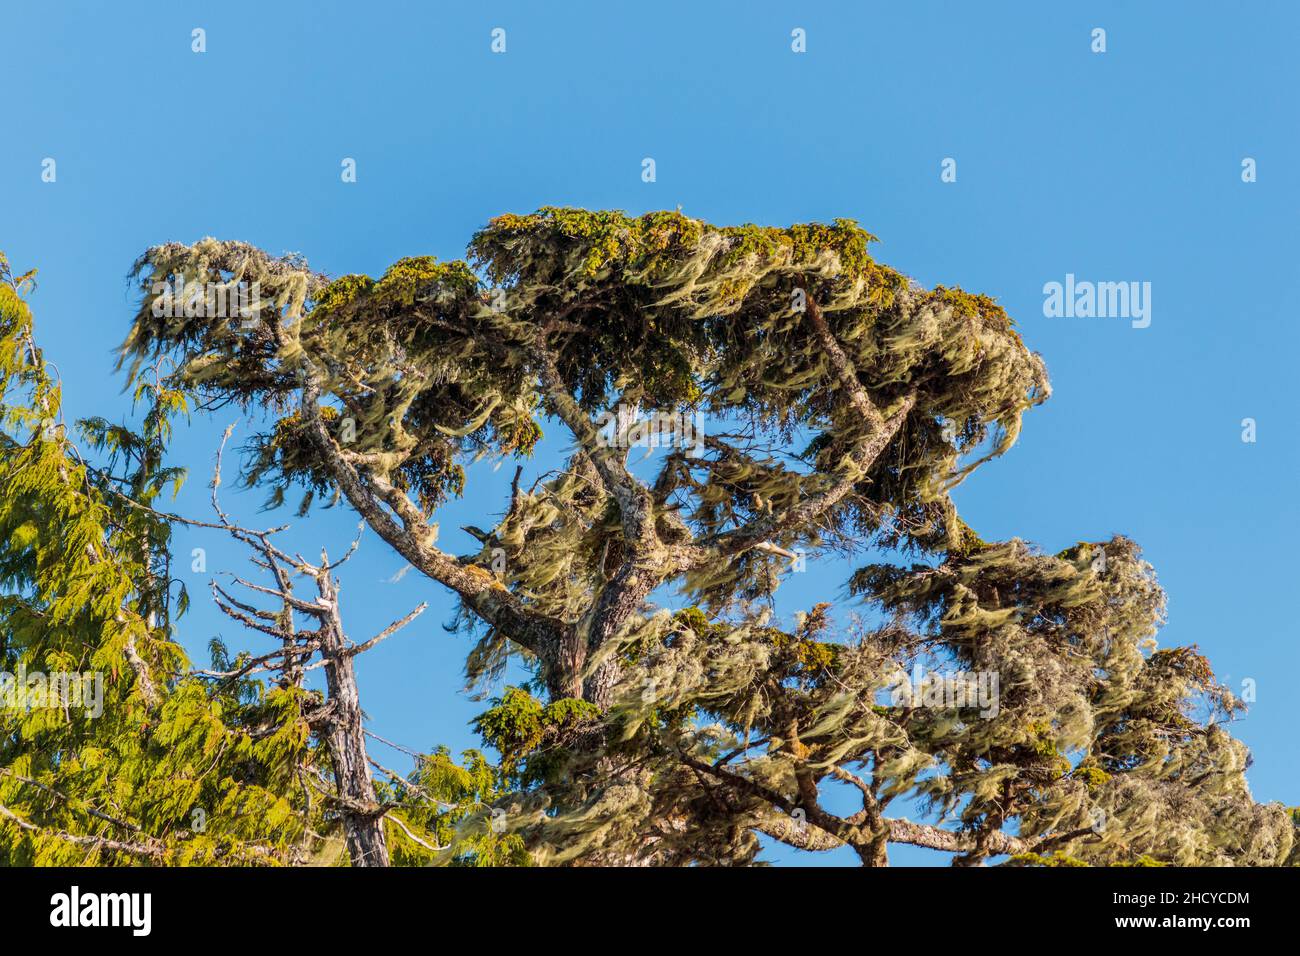 An der exponierten Central Coast von British Columbia steht ein Baum vor einem strahlend blauen Himmel, beladen mit dichtem Moos und lang hängenden windgesprengten Flechten. Stockfoto